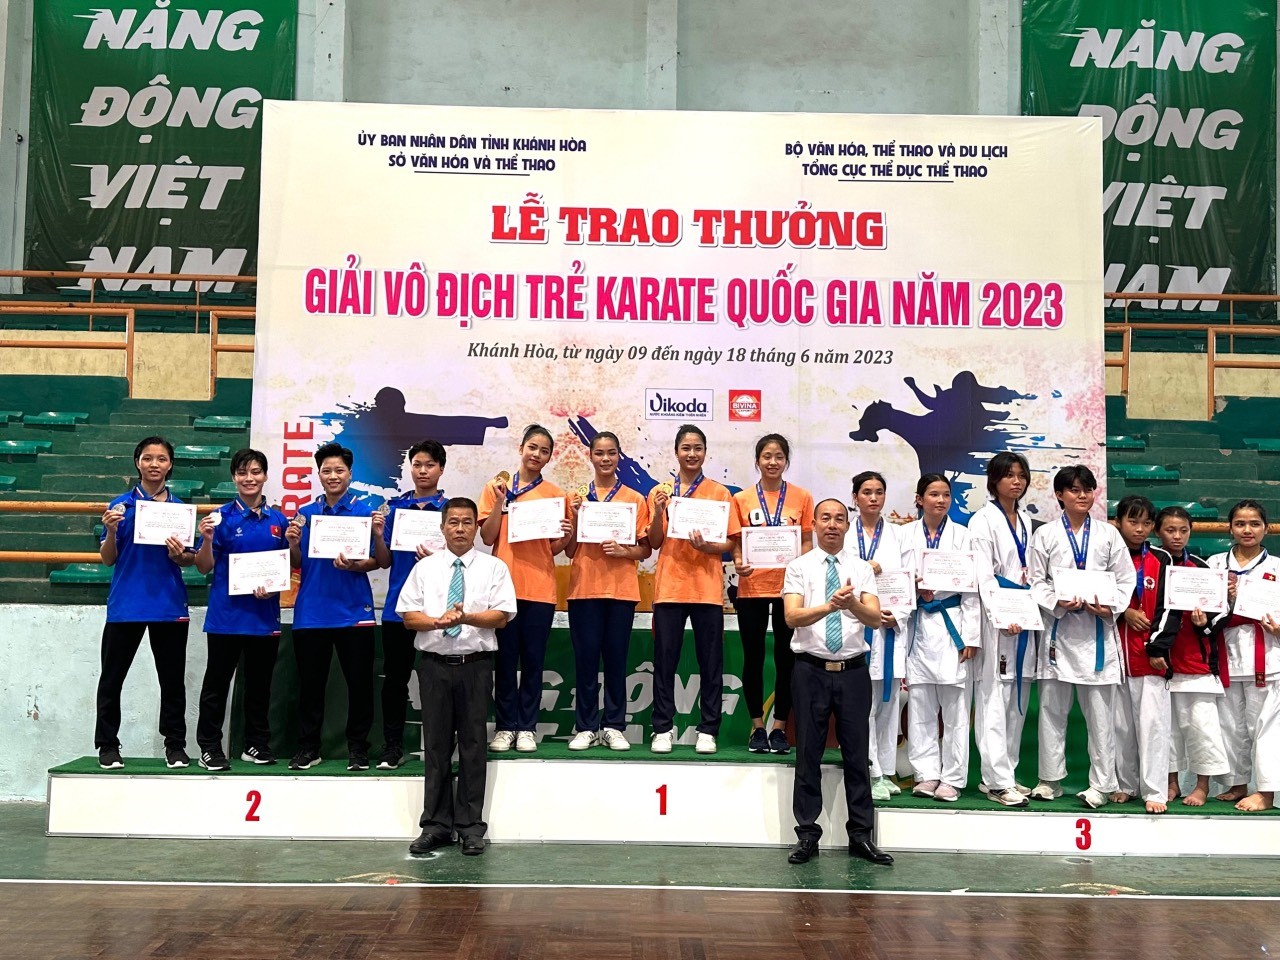 Giải Vô địch trẻ Karate Quốc gia năm 2023.